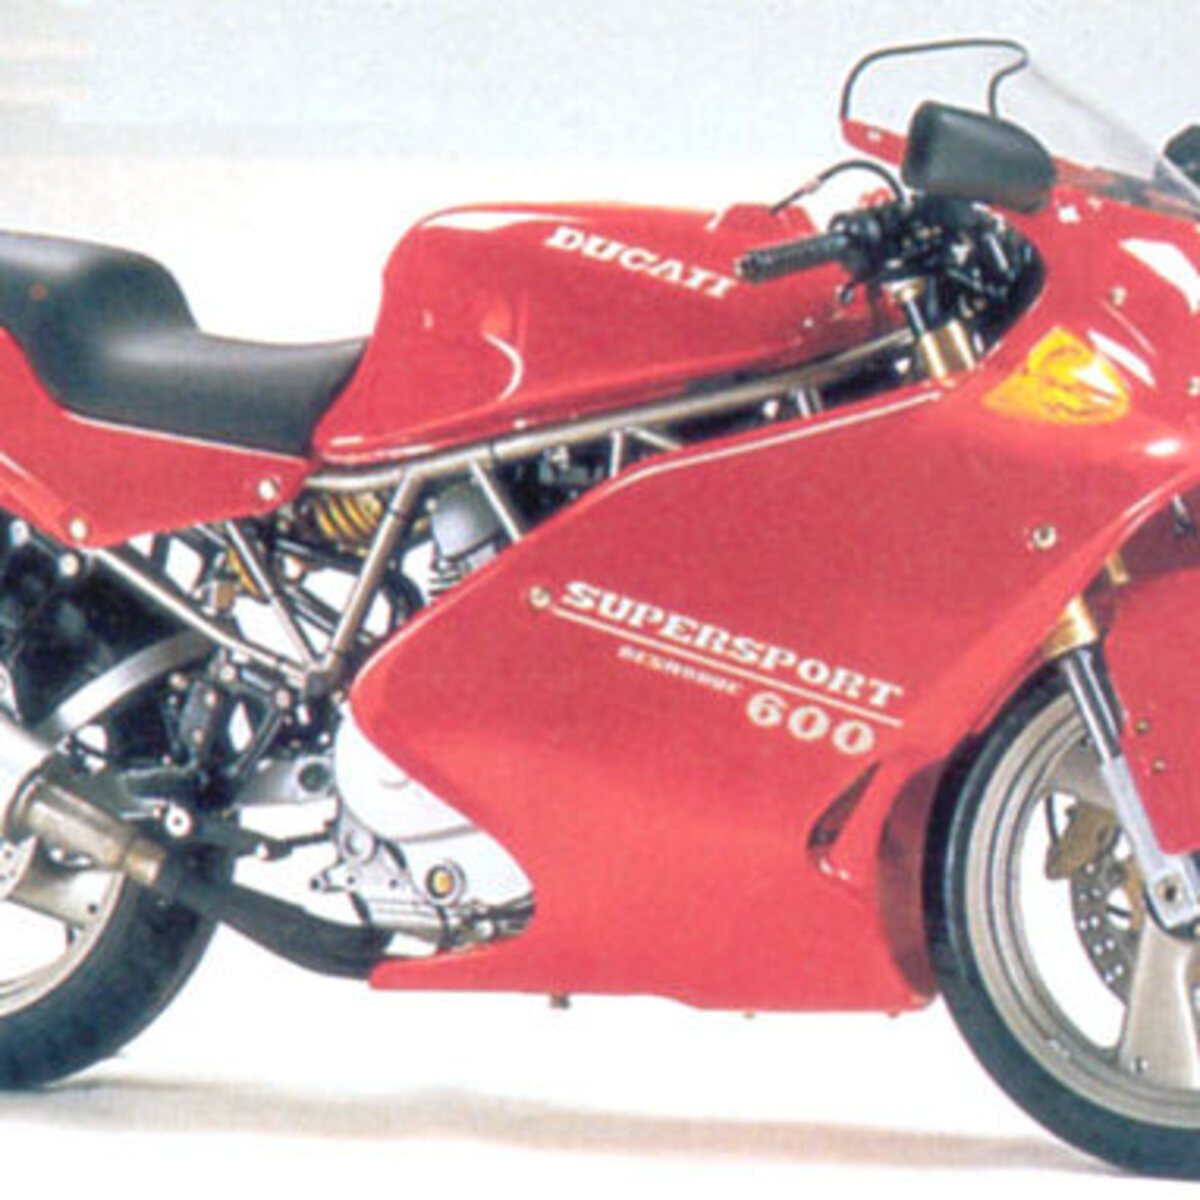 Ducati SS 600 Car. (1994 - 97)